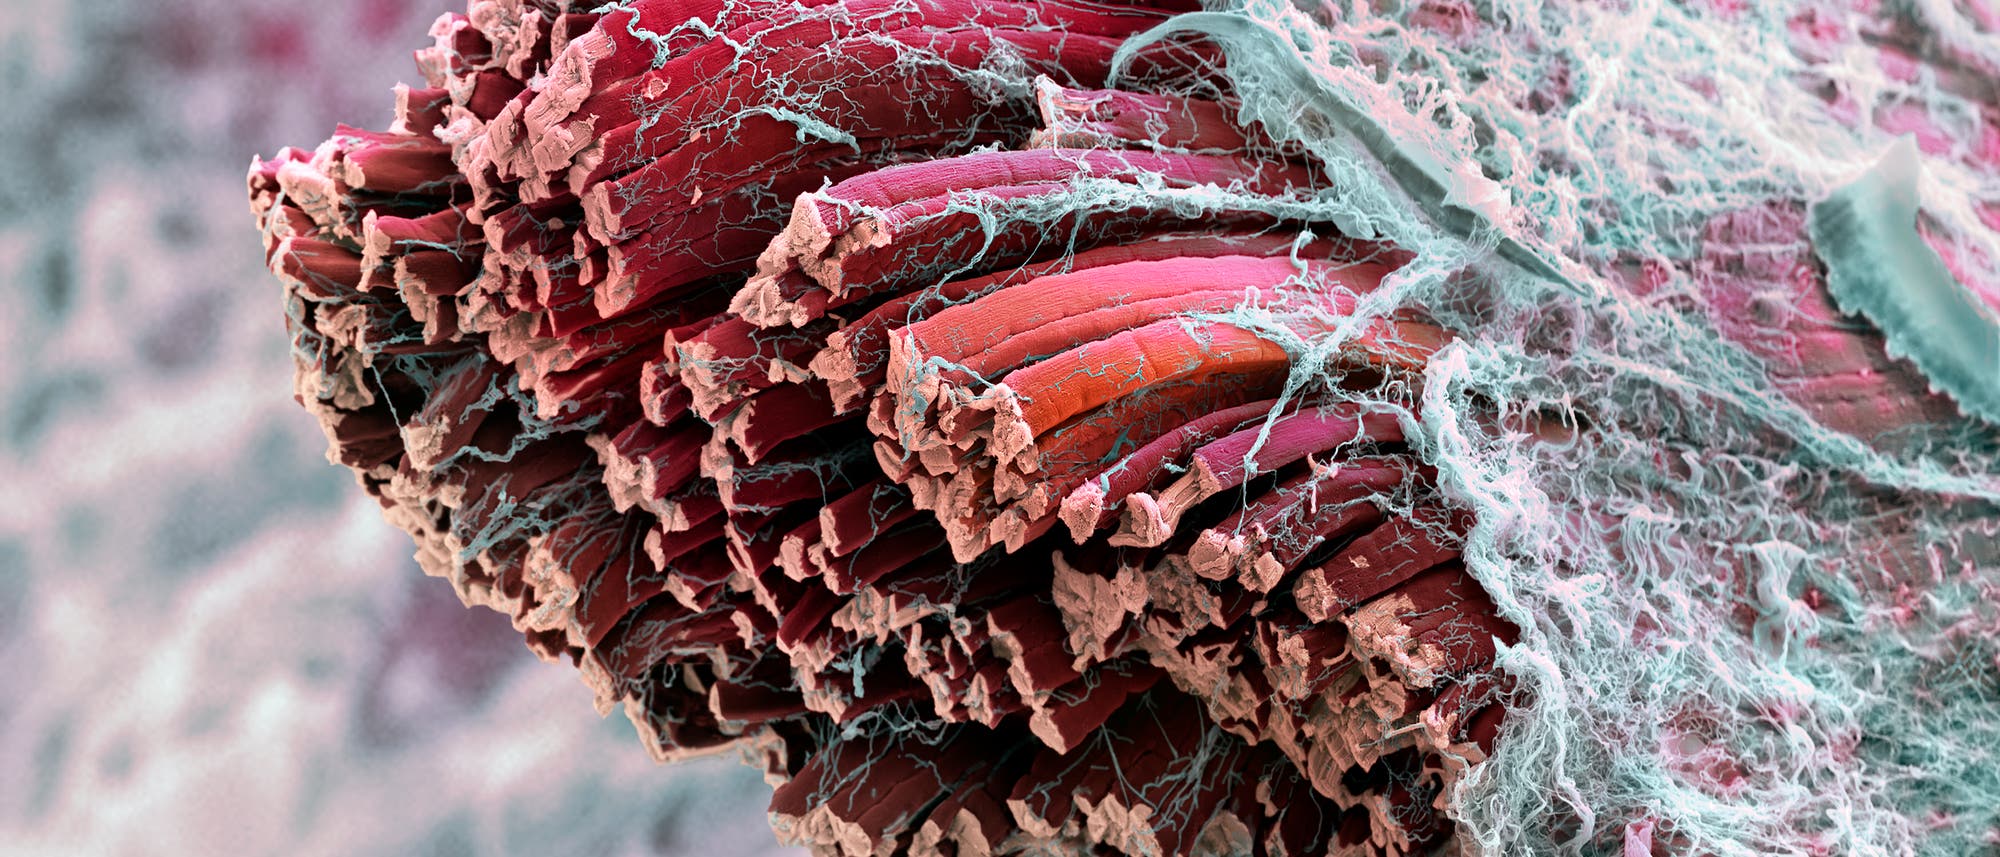 Mikroskopische eingefärbte Aufnahme von Muskelfasern und Fasziengewebe